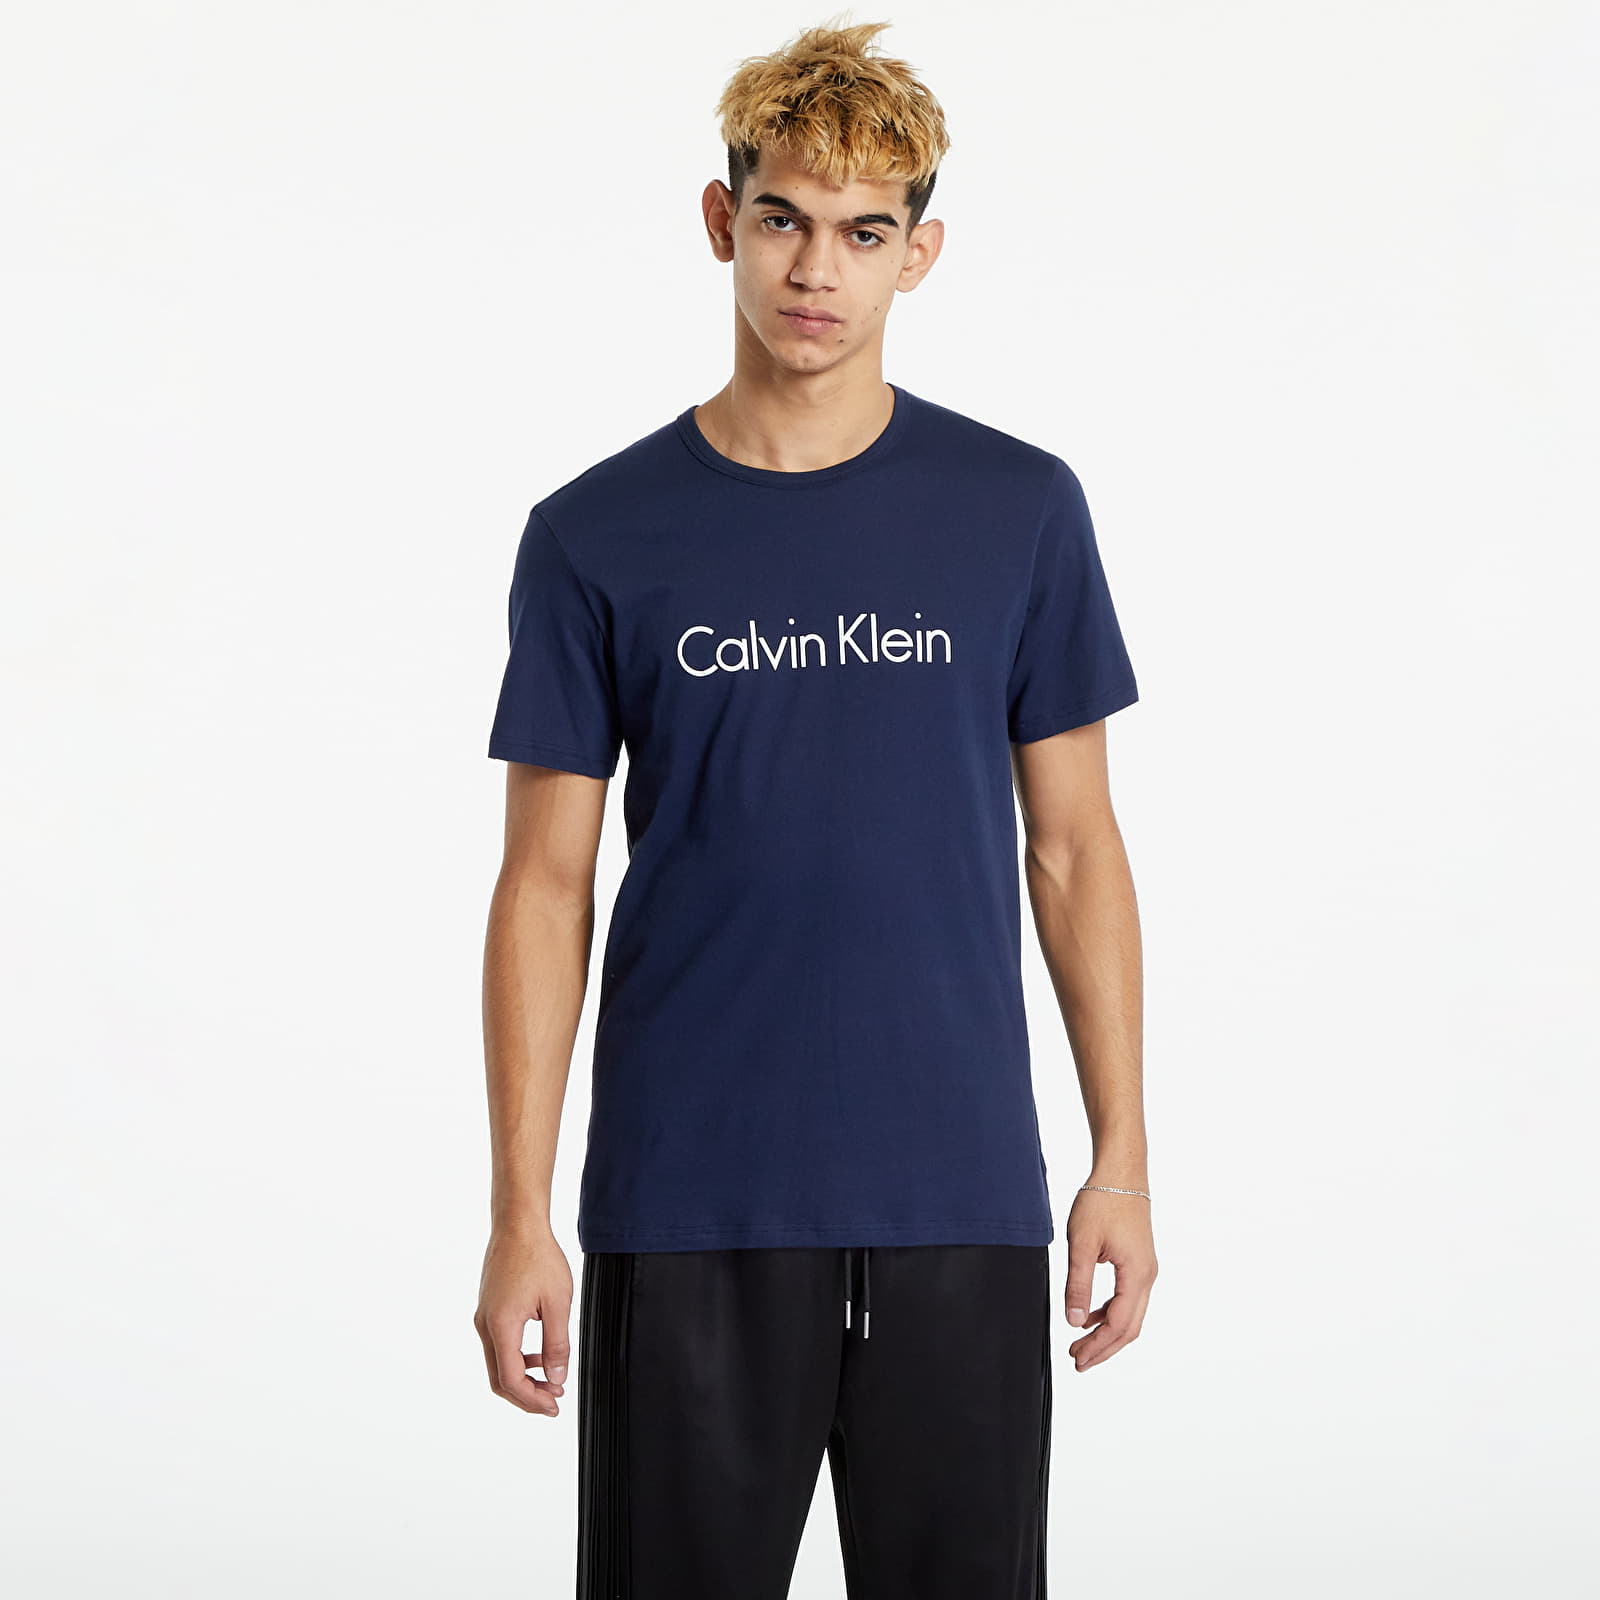 Pólók Calvin Klein Graphic Tee Navy